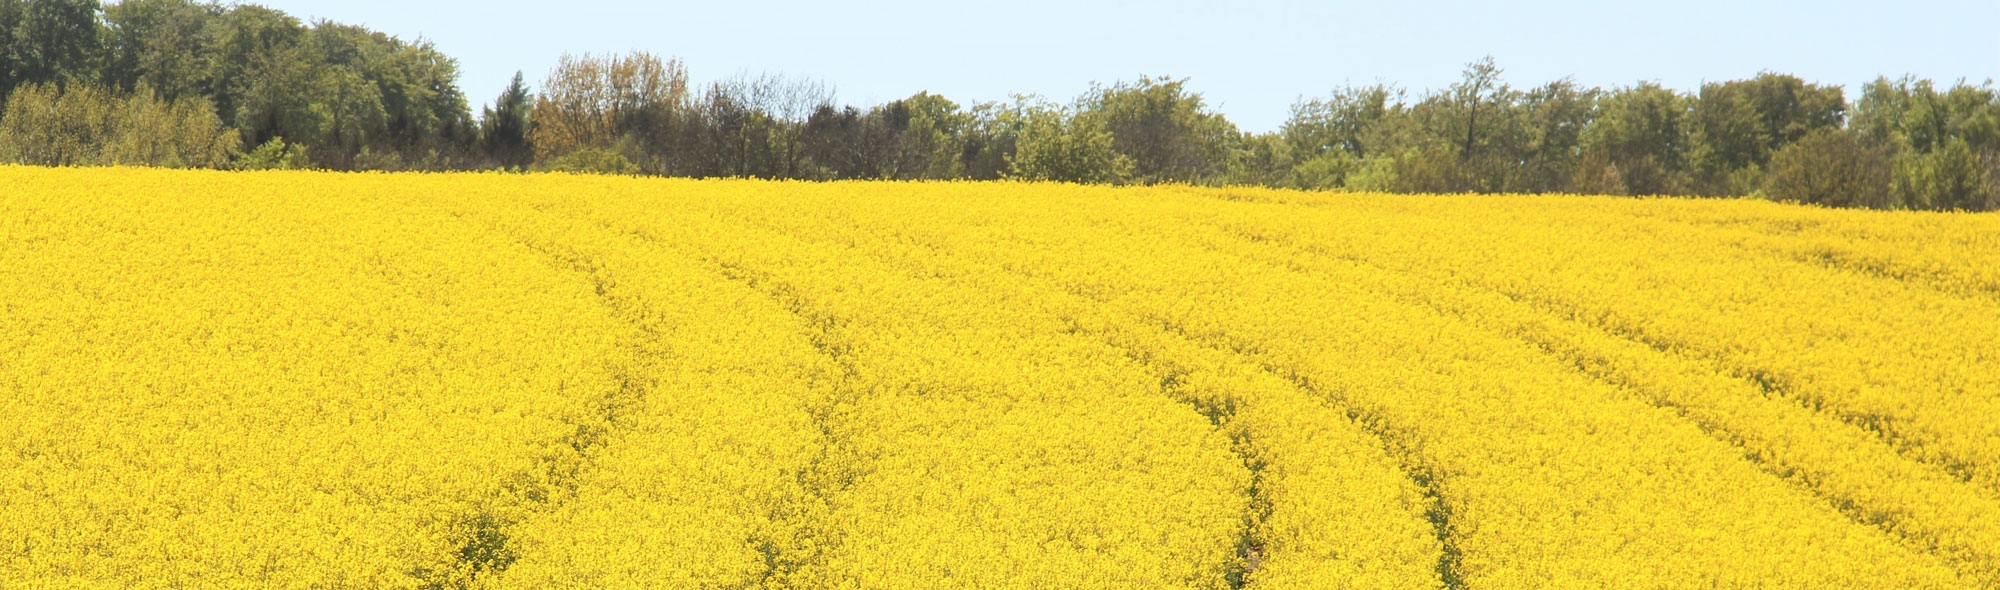 field-of-rapeseeds-1380239.jpg